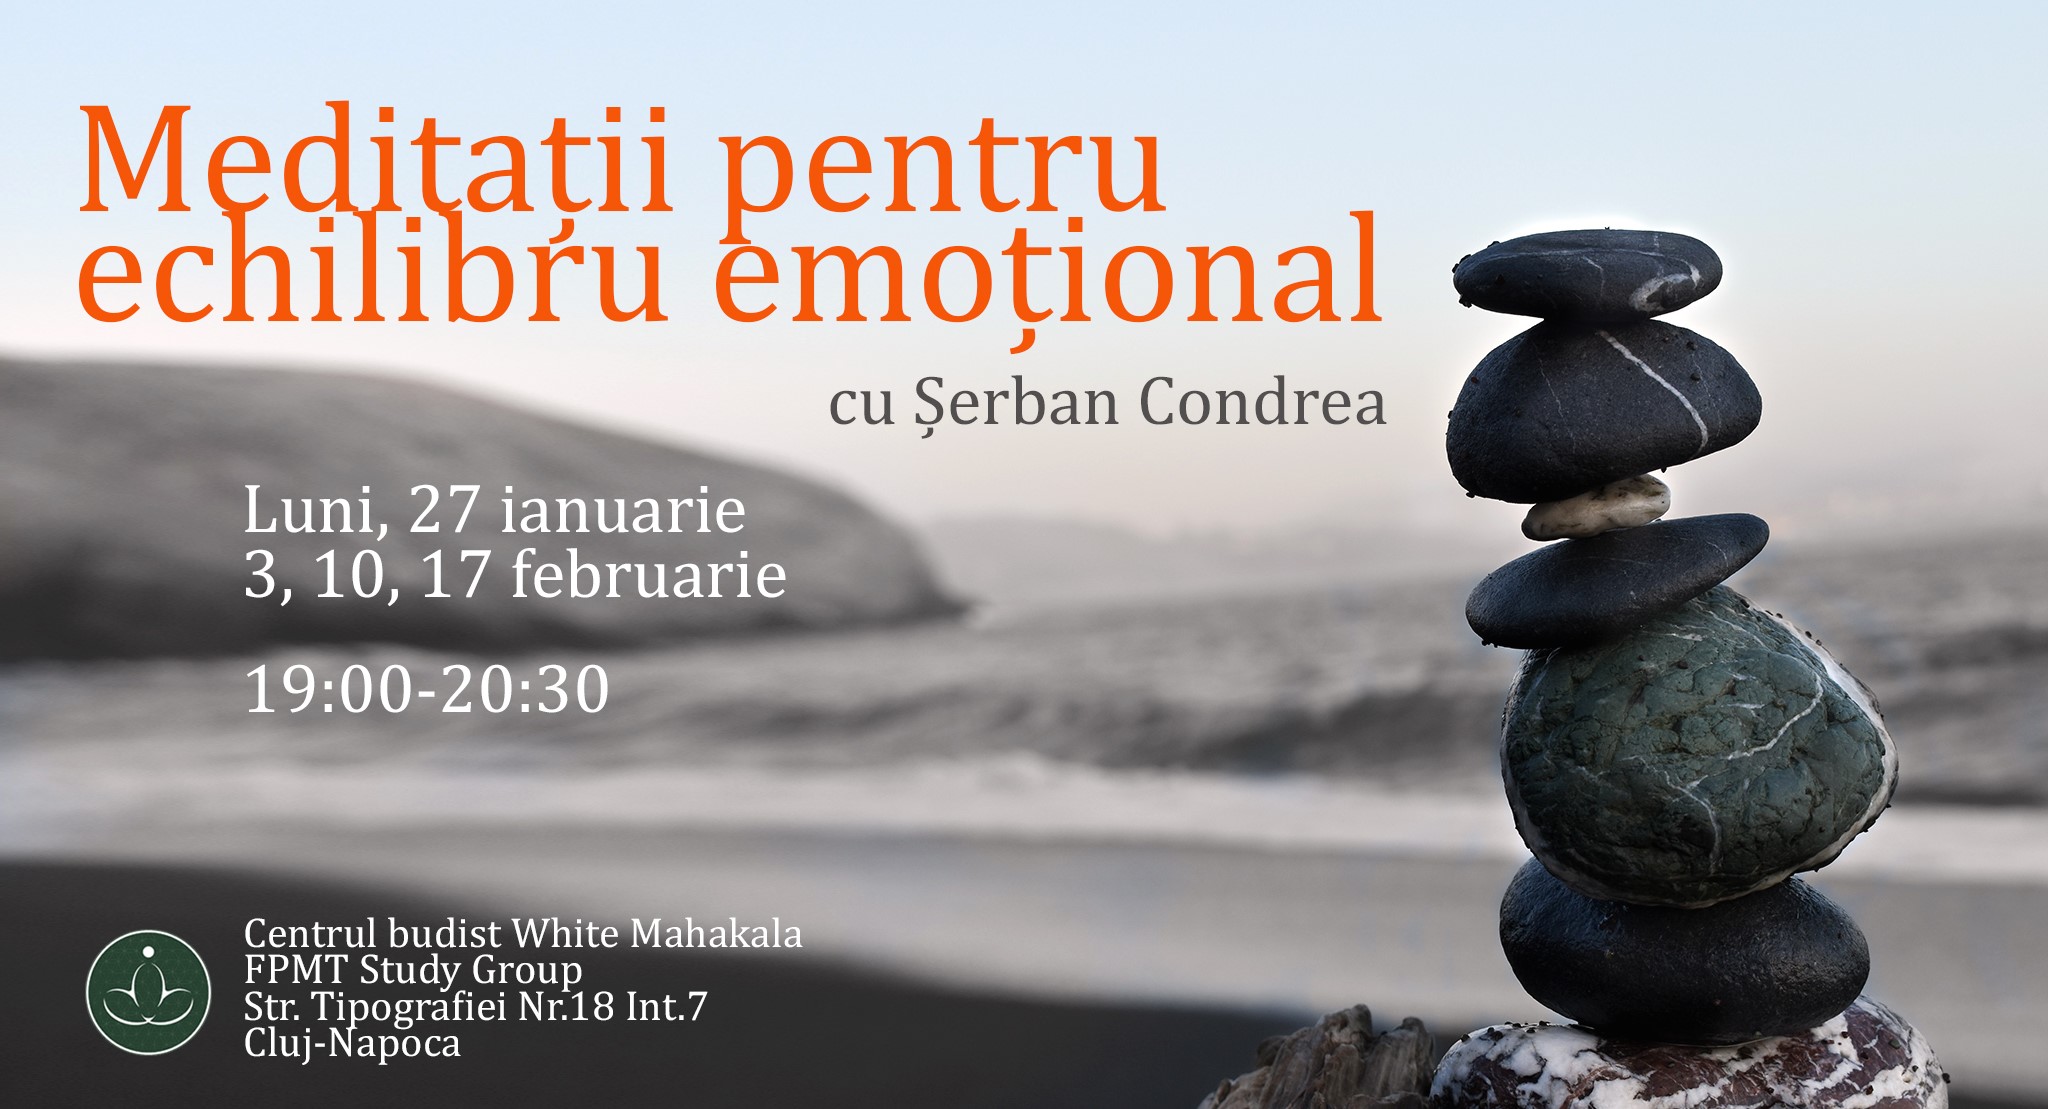 Meditatii pentru echilibru emotional cu Serban